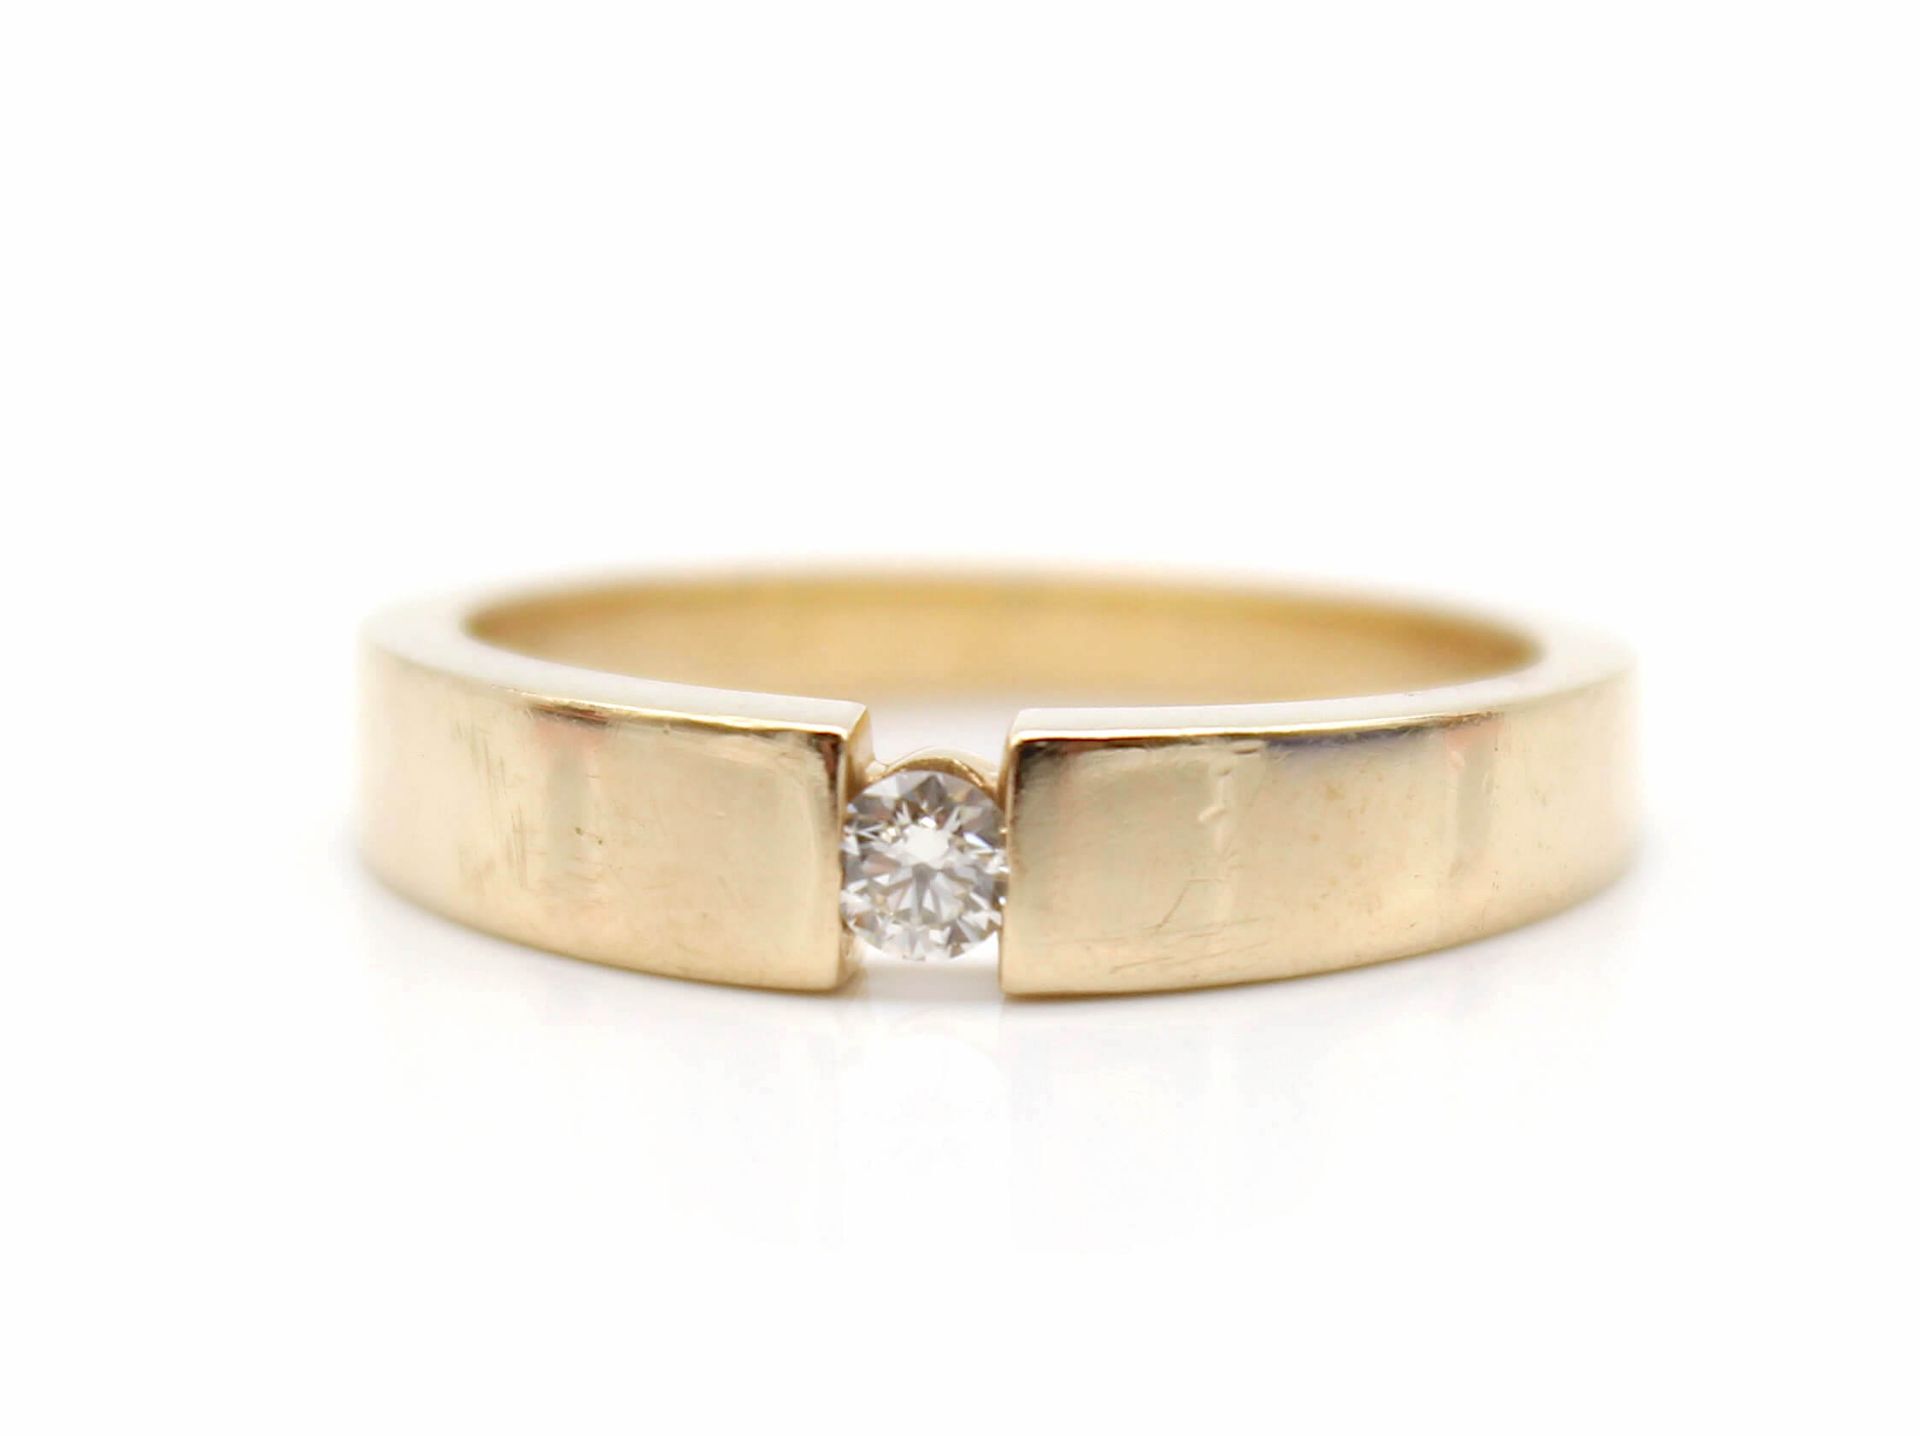 Ring aus 585er Gold mit einem Brillanten, ca. 0,10 ct, VVS, Farbe K-L. Gewicht: 4,7 g, Größe: 56 - Bild 2 aus 2